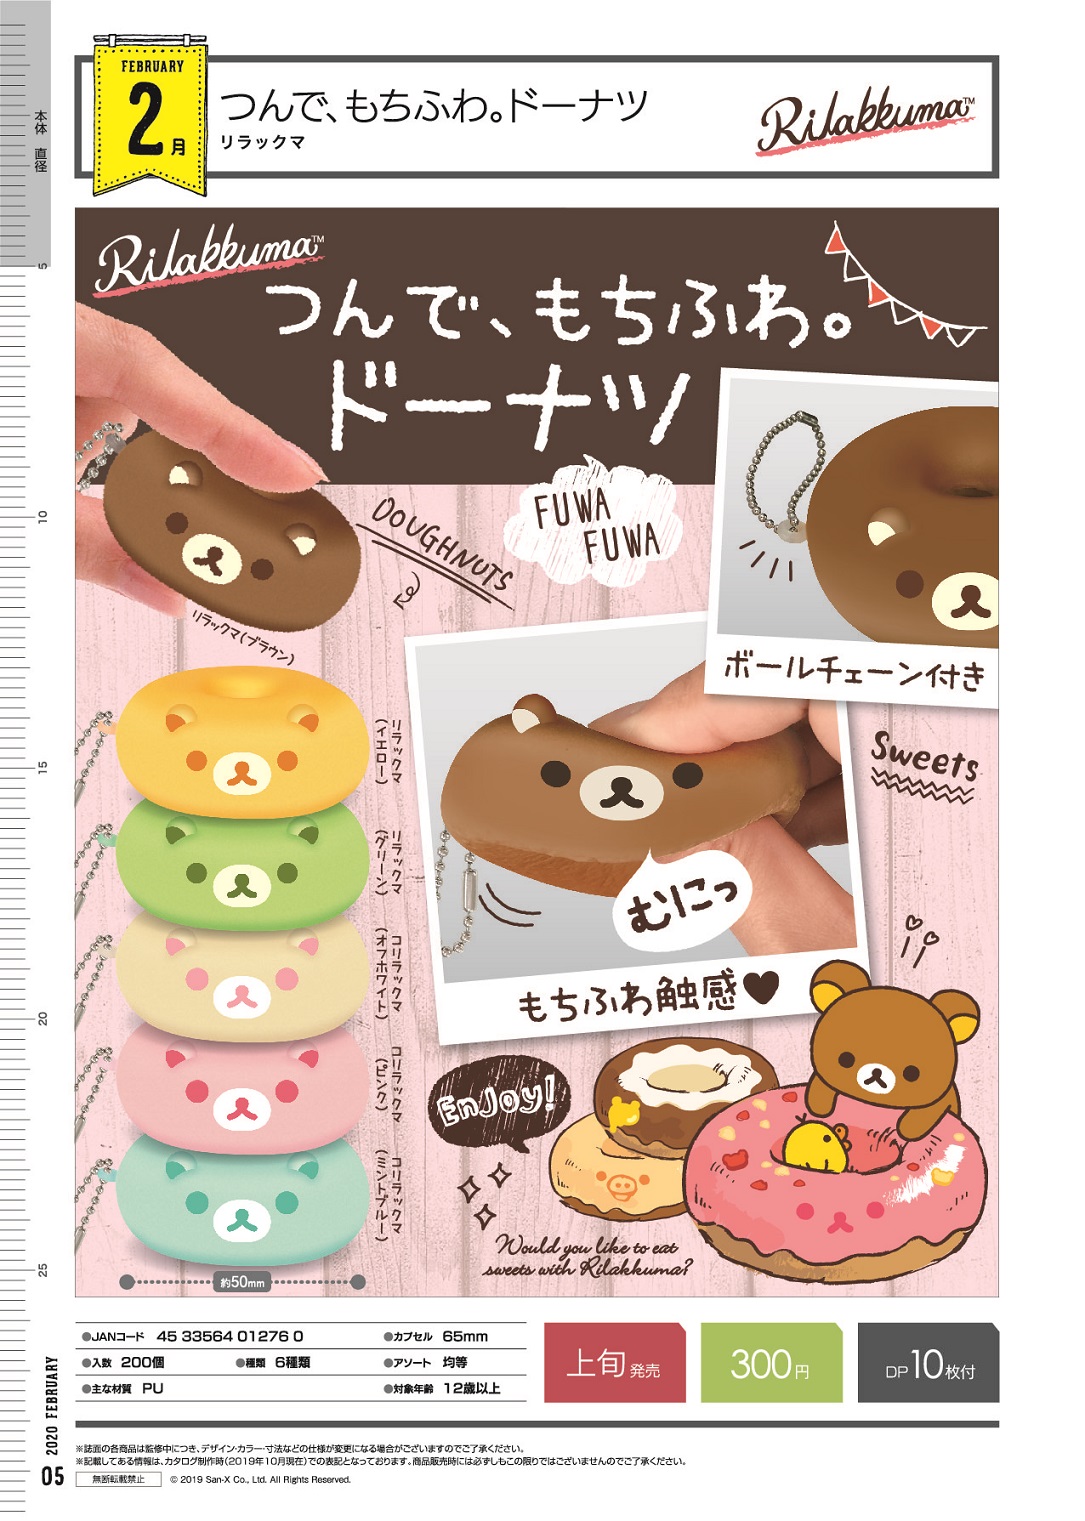 300日元扭蛋 轻松熊系列 叠叠乐 甜甜圈挂件 全6种 (1袋40个)  012760